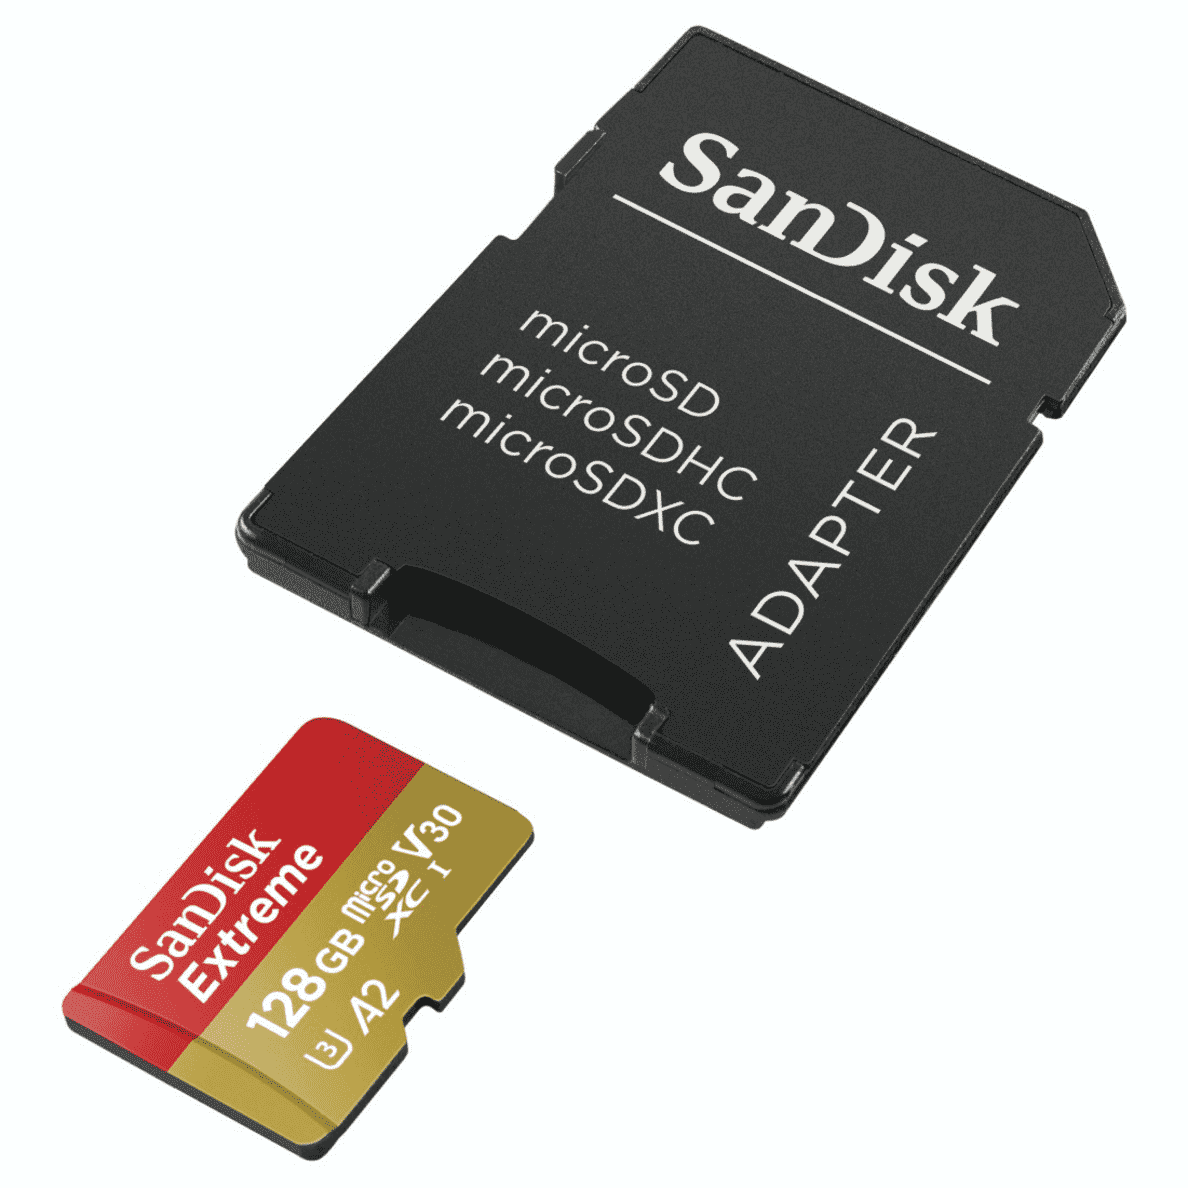 Du kannst 4K-UHD-Videos auf deiner SANDISK Extreme Micro-SDXC Speicherkarte abspeichern.